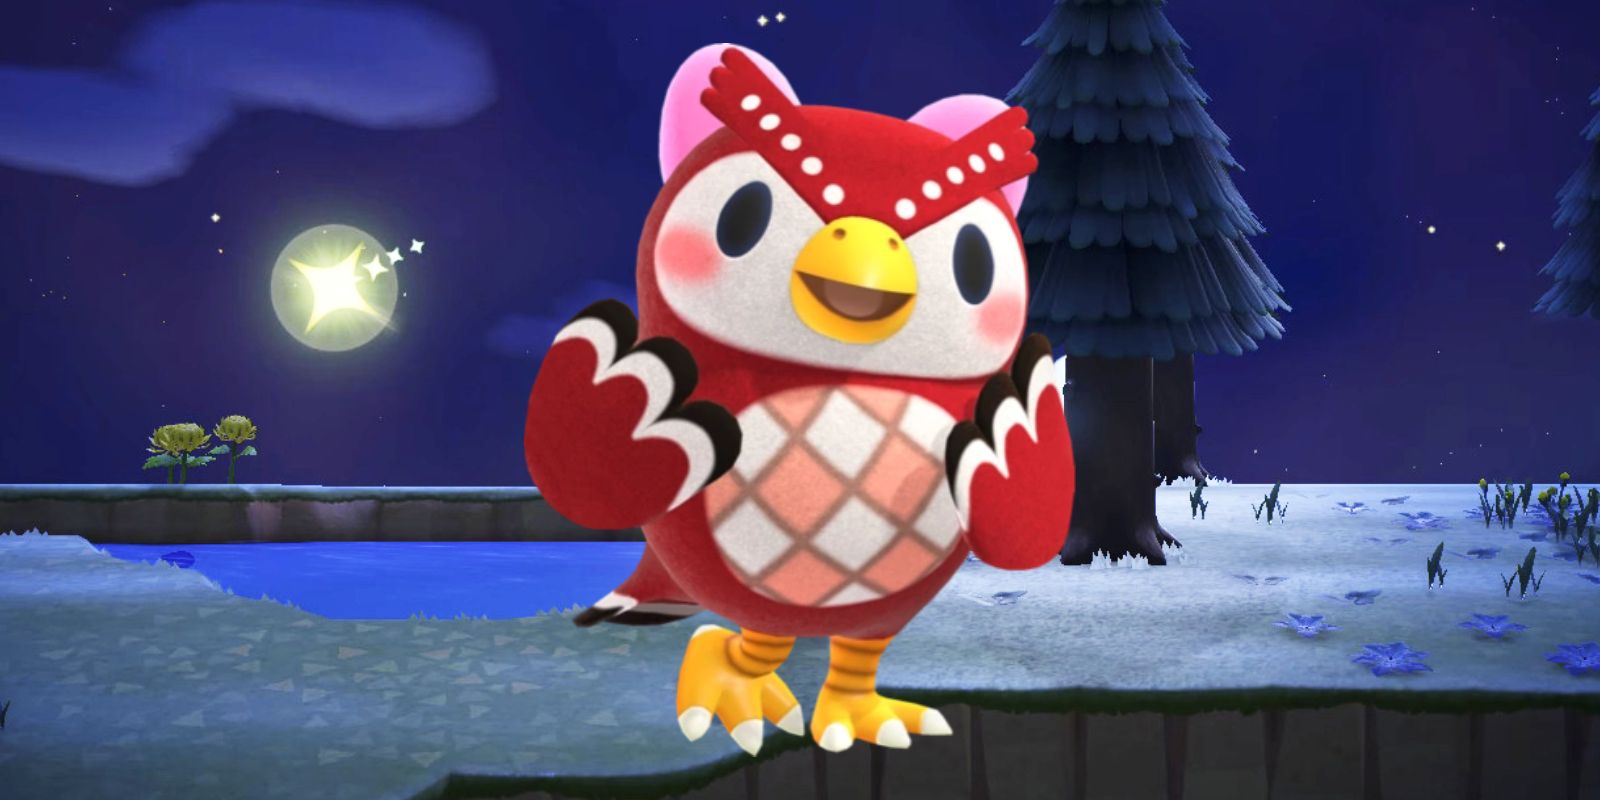 Sweet Animal Crossing Fan Art muestra fiesta de pijamas de Starry Villager